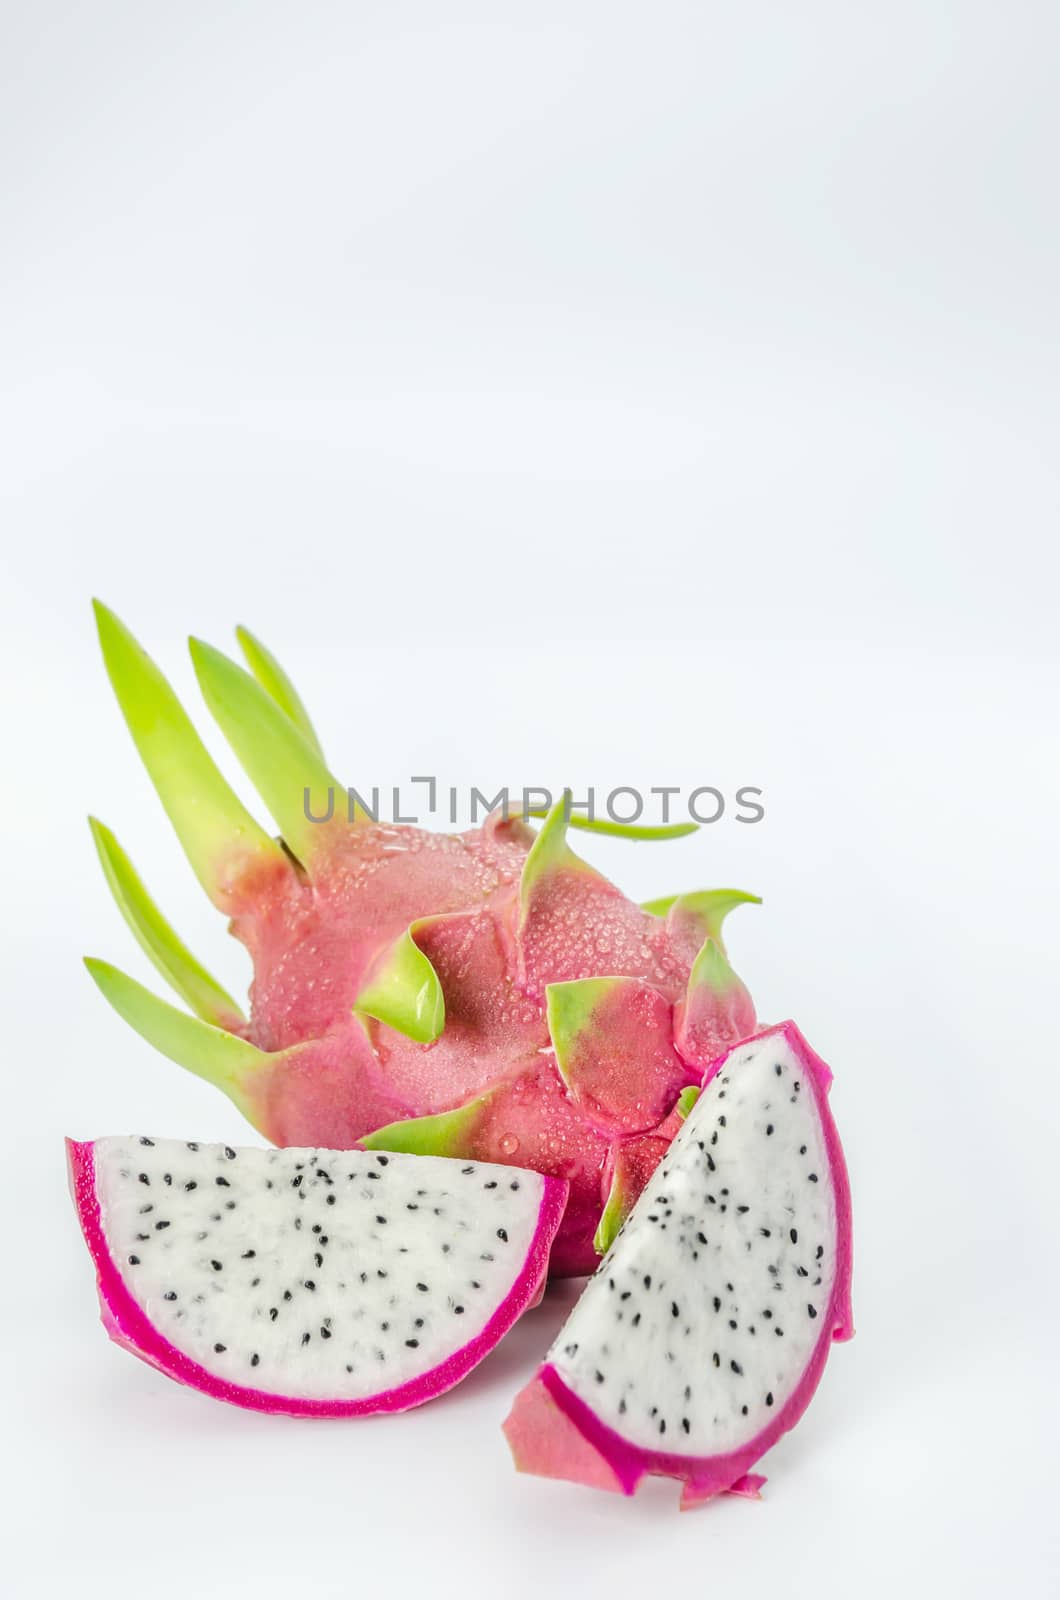 Ripe Dragon fruit or Pitaya with slice on white background